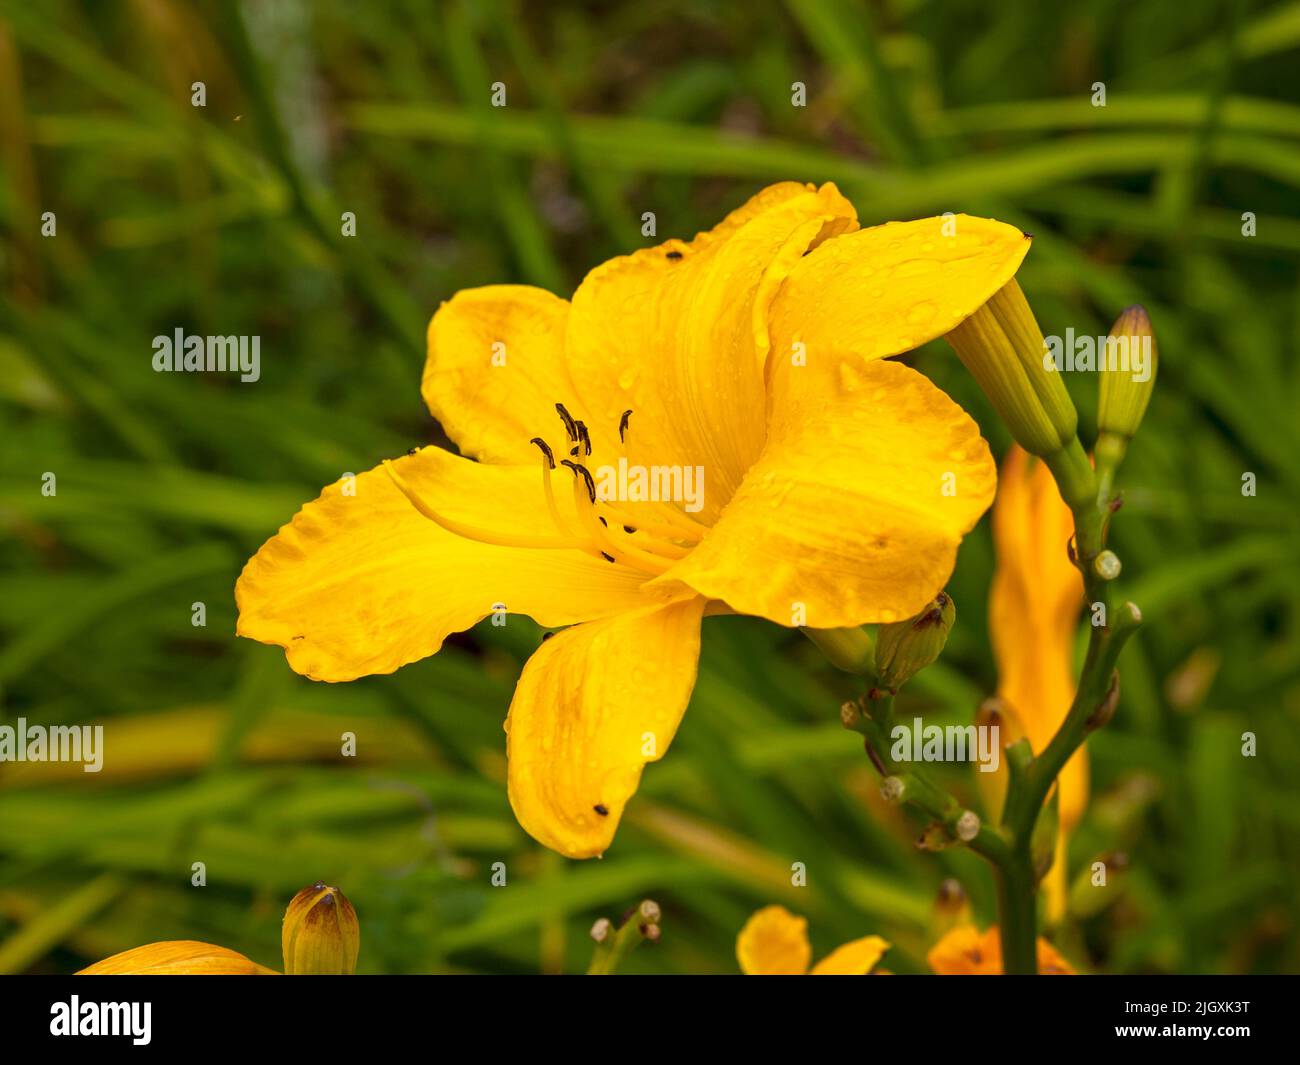 Beautiful yellow Hemerocallis Cartwheels daylily flower Stock Photo